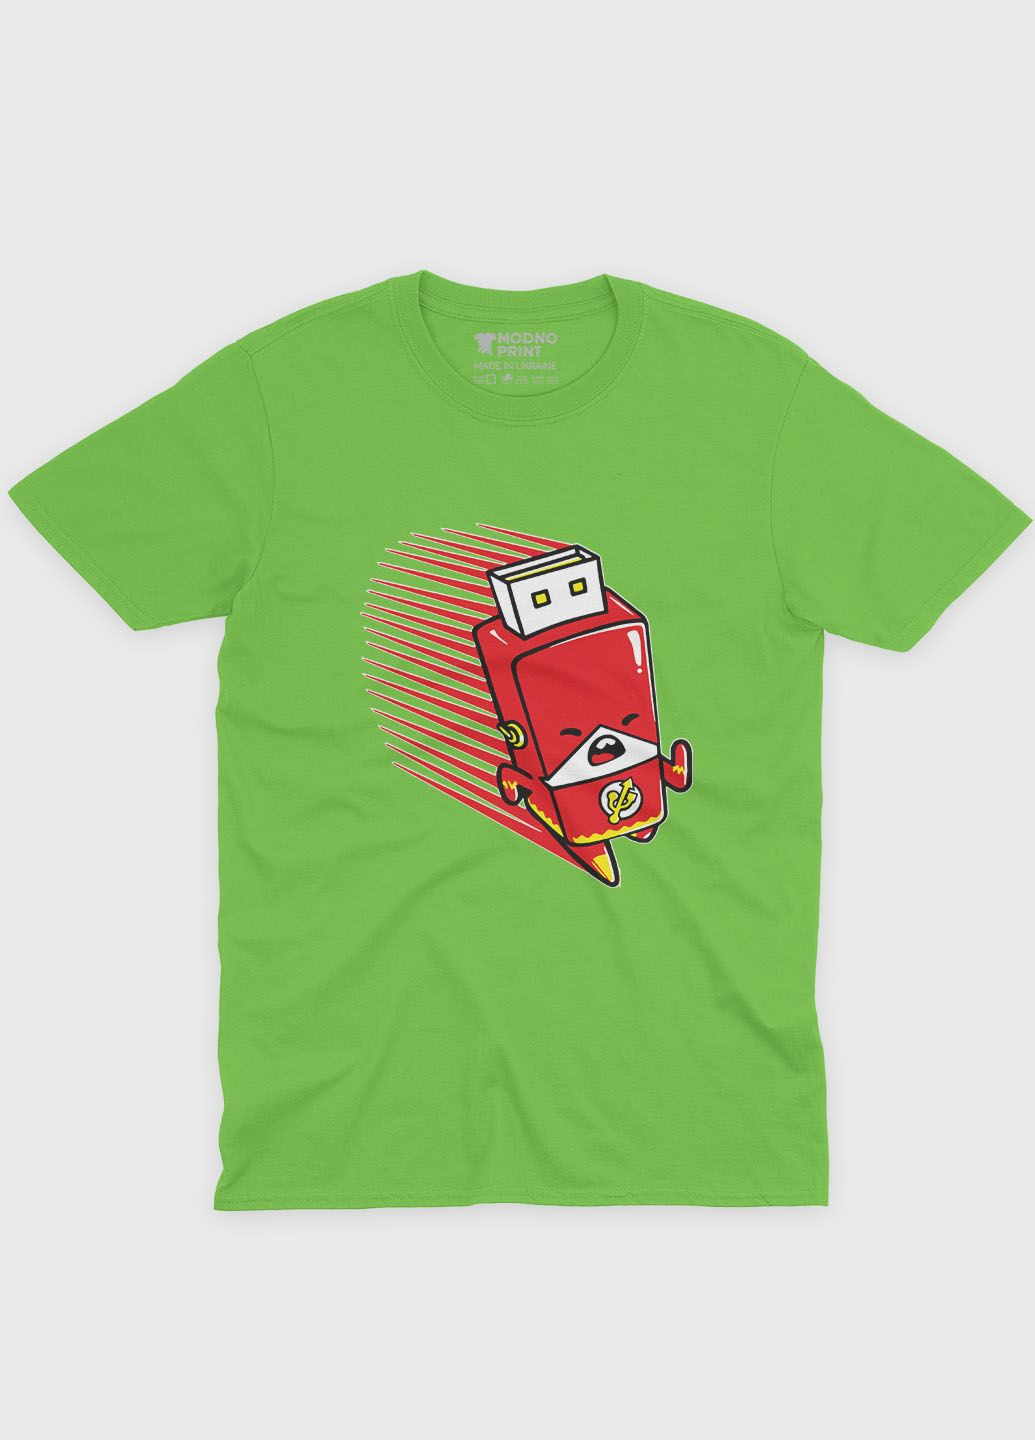 Салатовая демисезонная футболка для мальчика с принтом супергероя - флэш (ts001-1-kiw-006-010-004-b) Modno